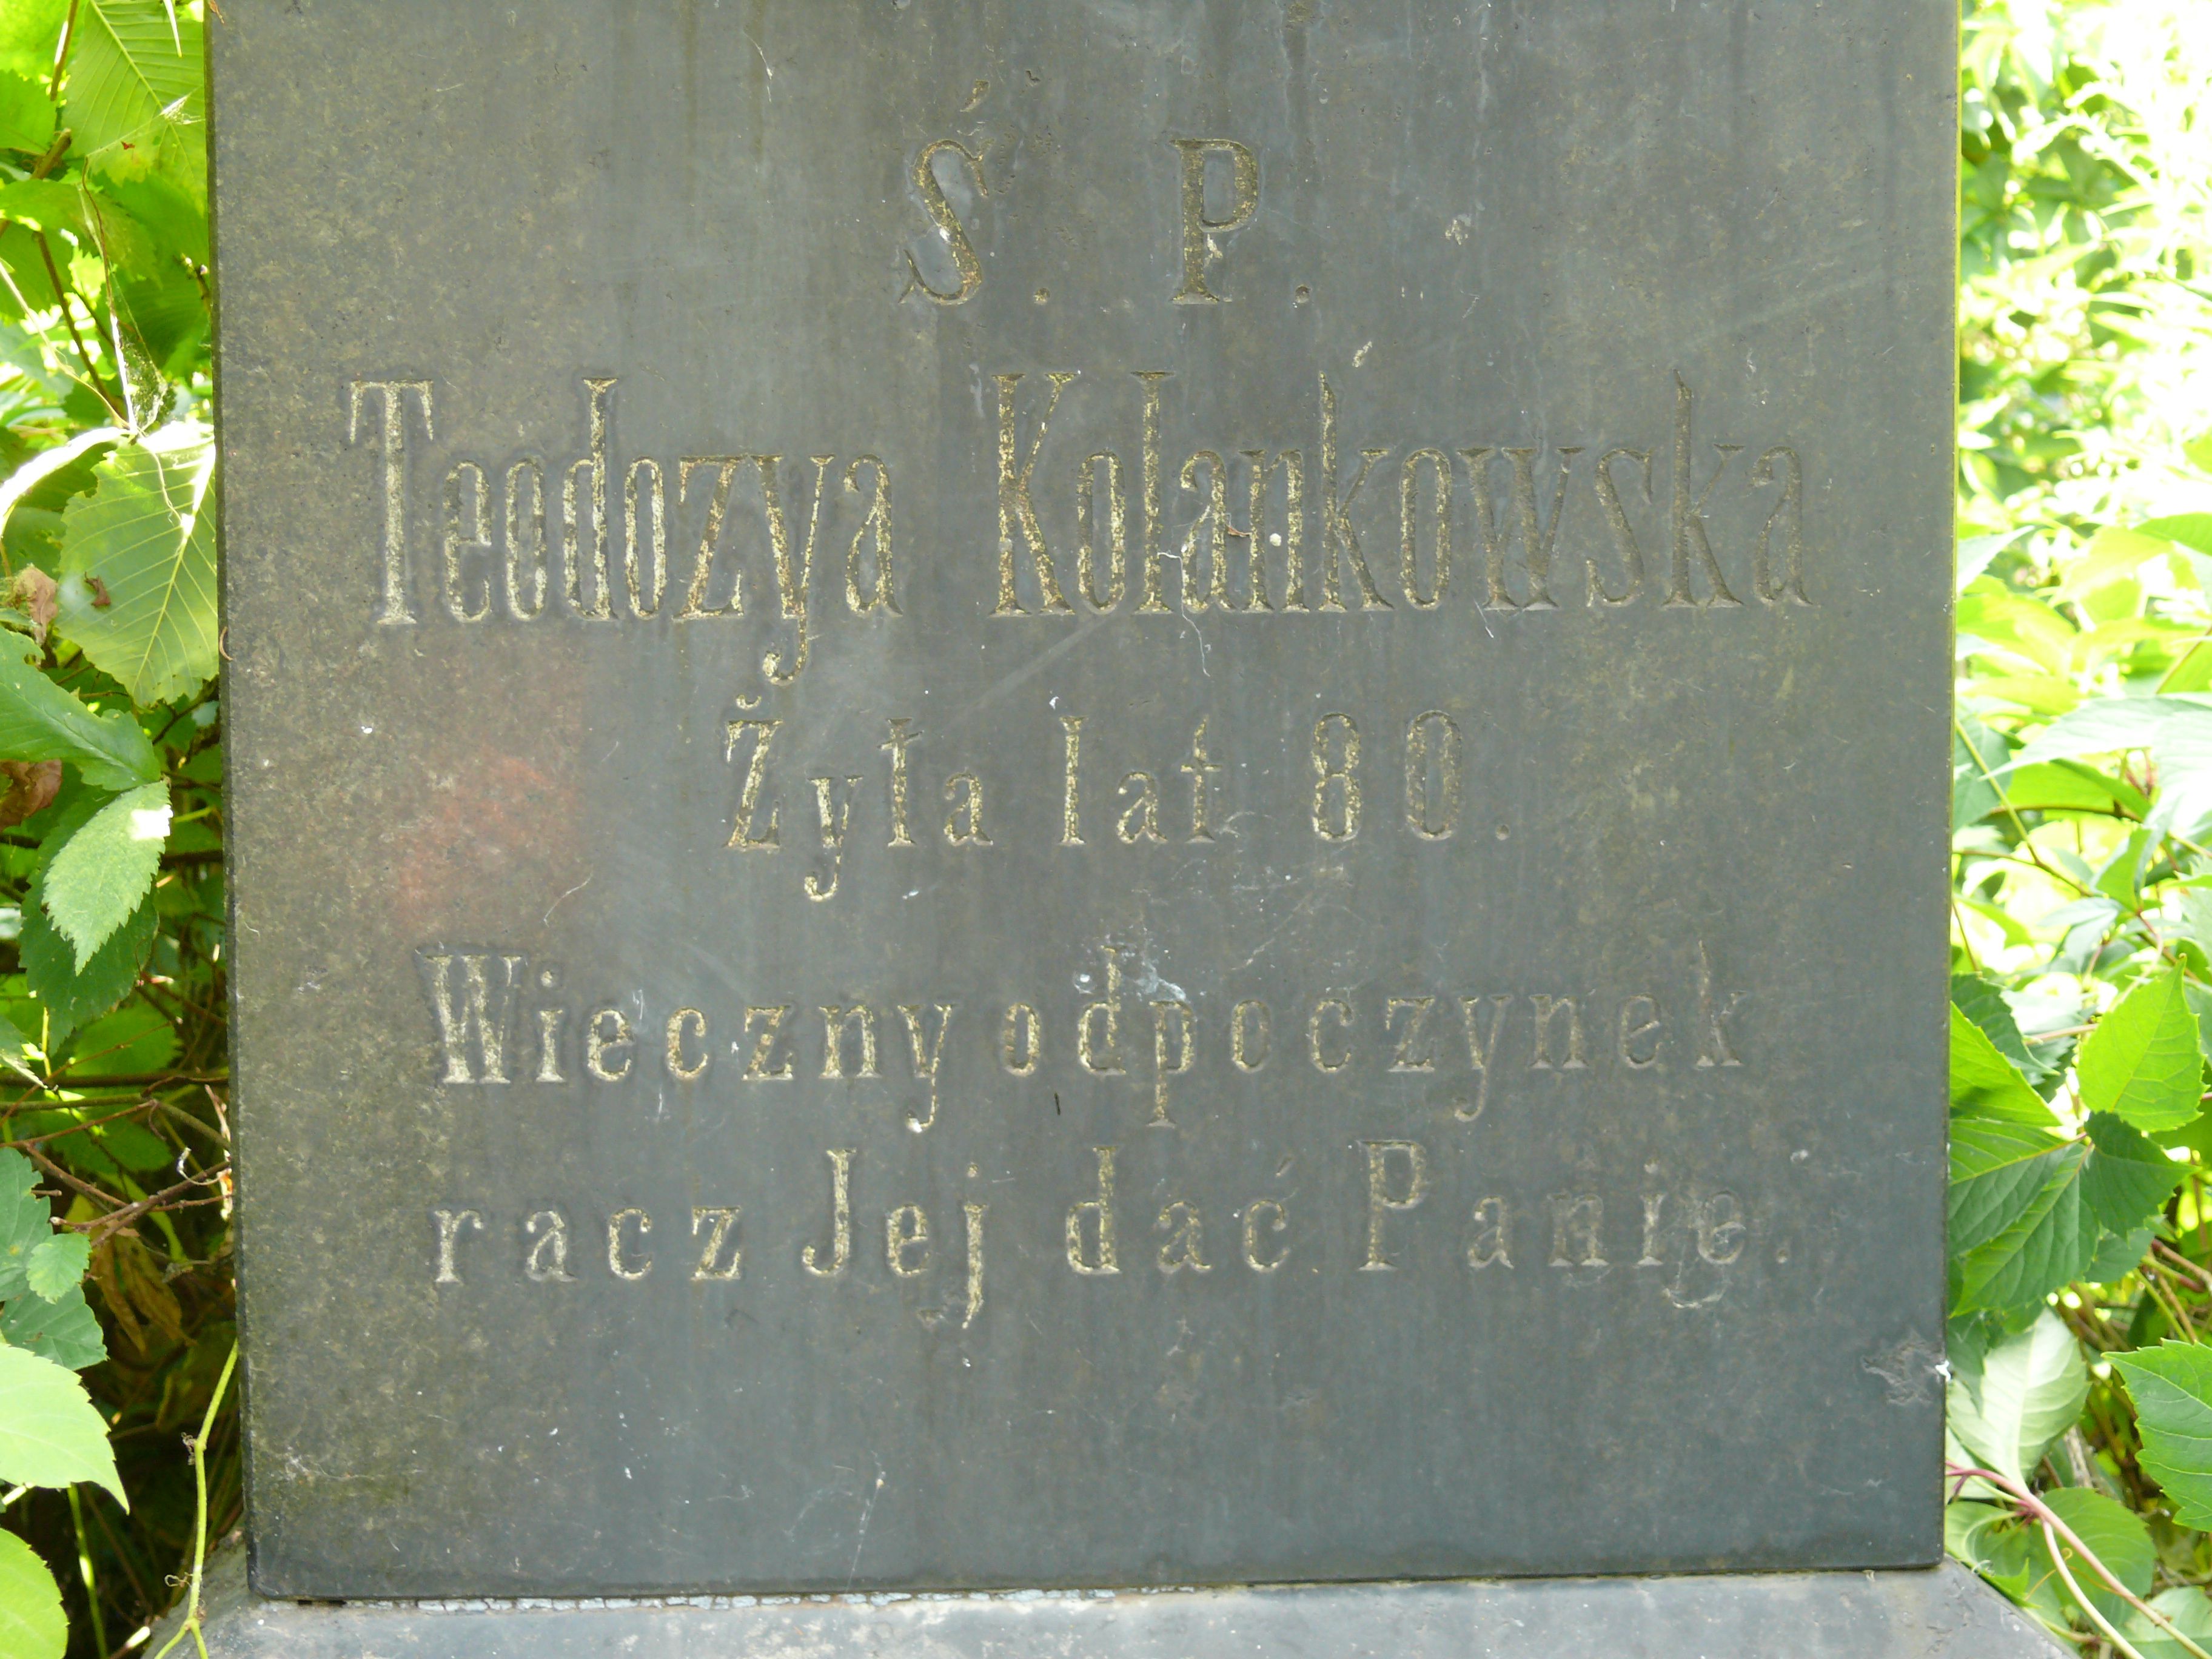 Inscription from the tombstone of Teodosia Kolankowska